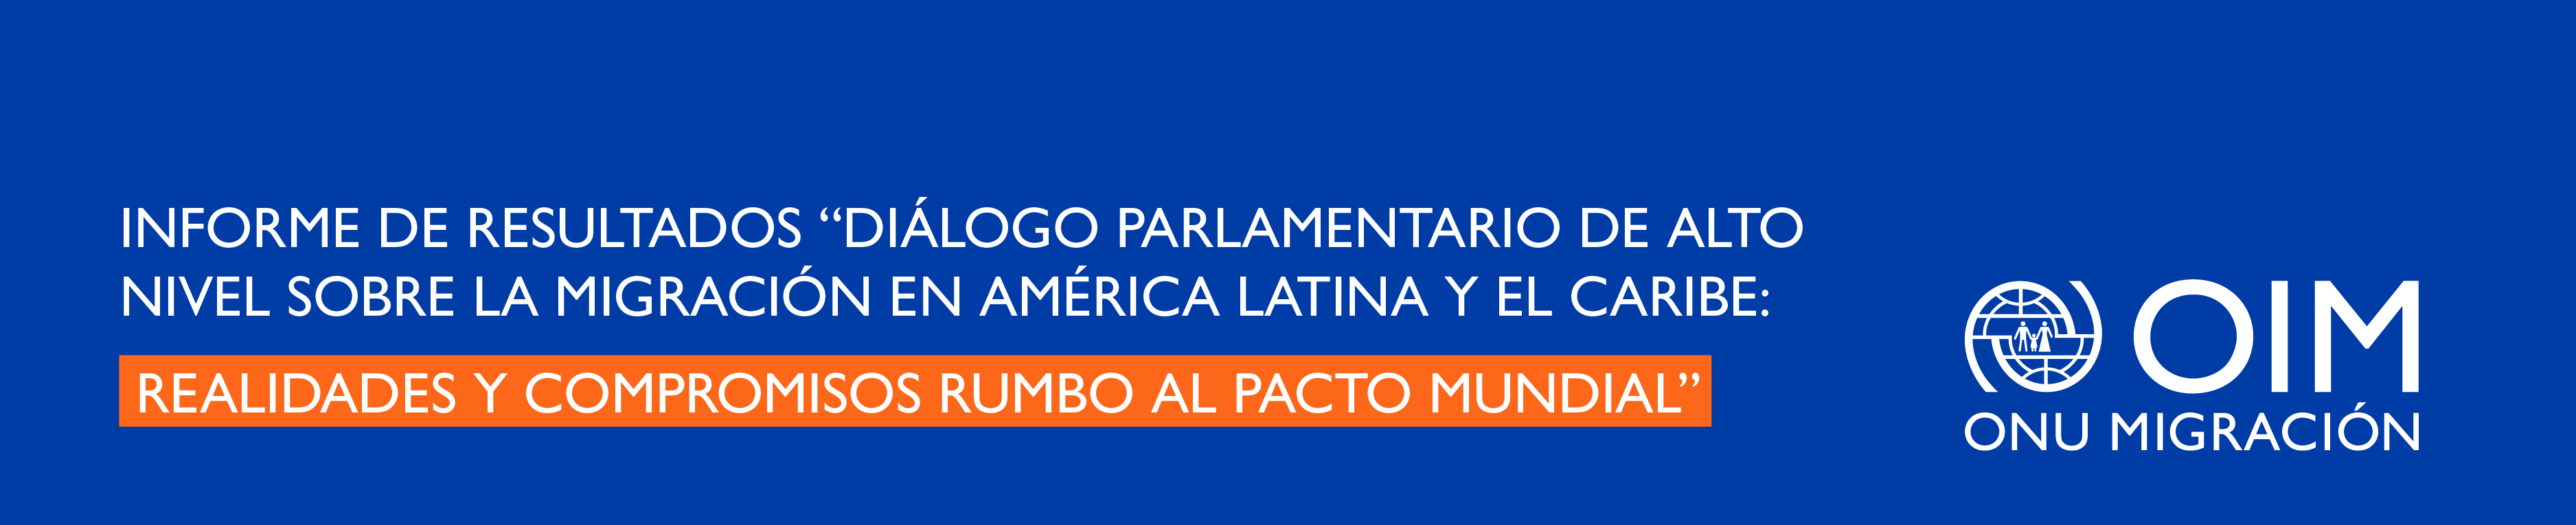 Informe de resultados “Diálogo Parlamentario de Alto Nivel sobre la Migración en América Latina y el Caribe: Realidades y Compromisos Rumbo al Pacto Mundial”